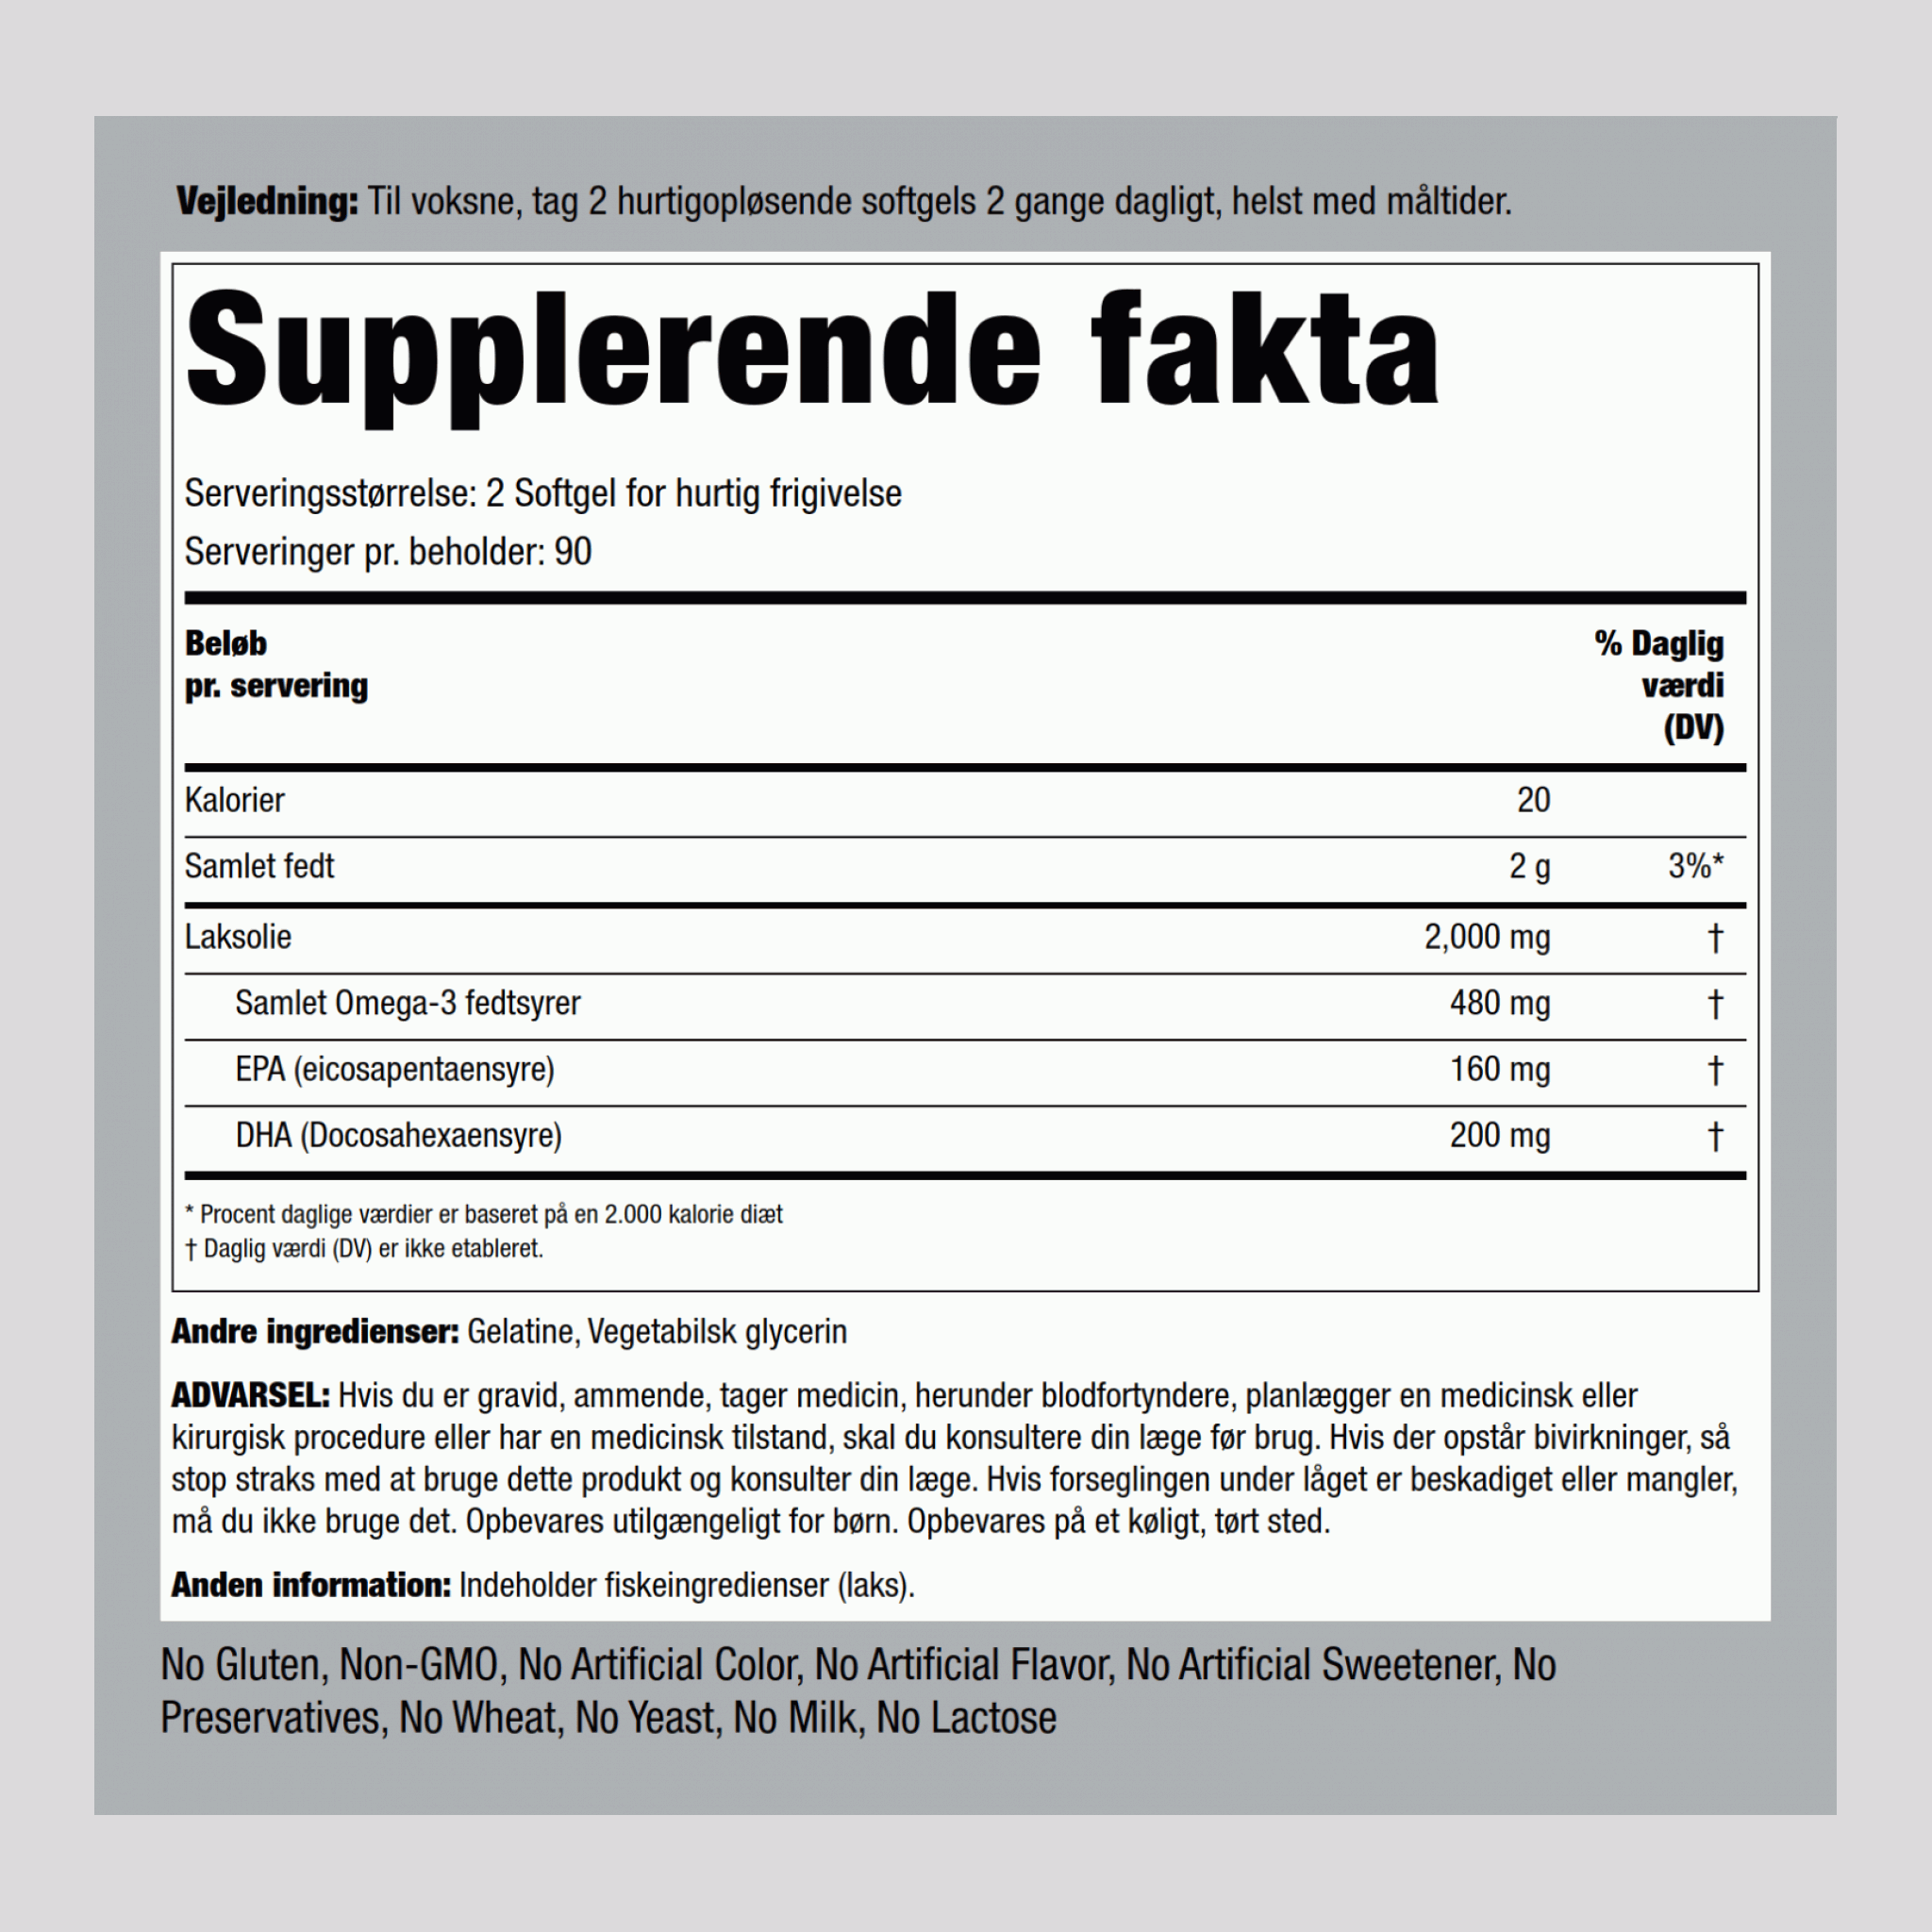 Alaska Vildlakseolie 1000 mg Jomfru 